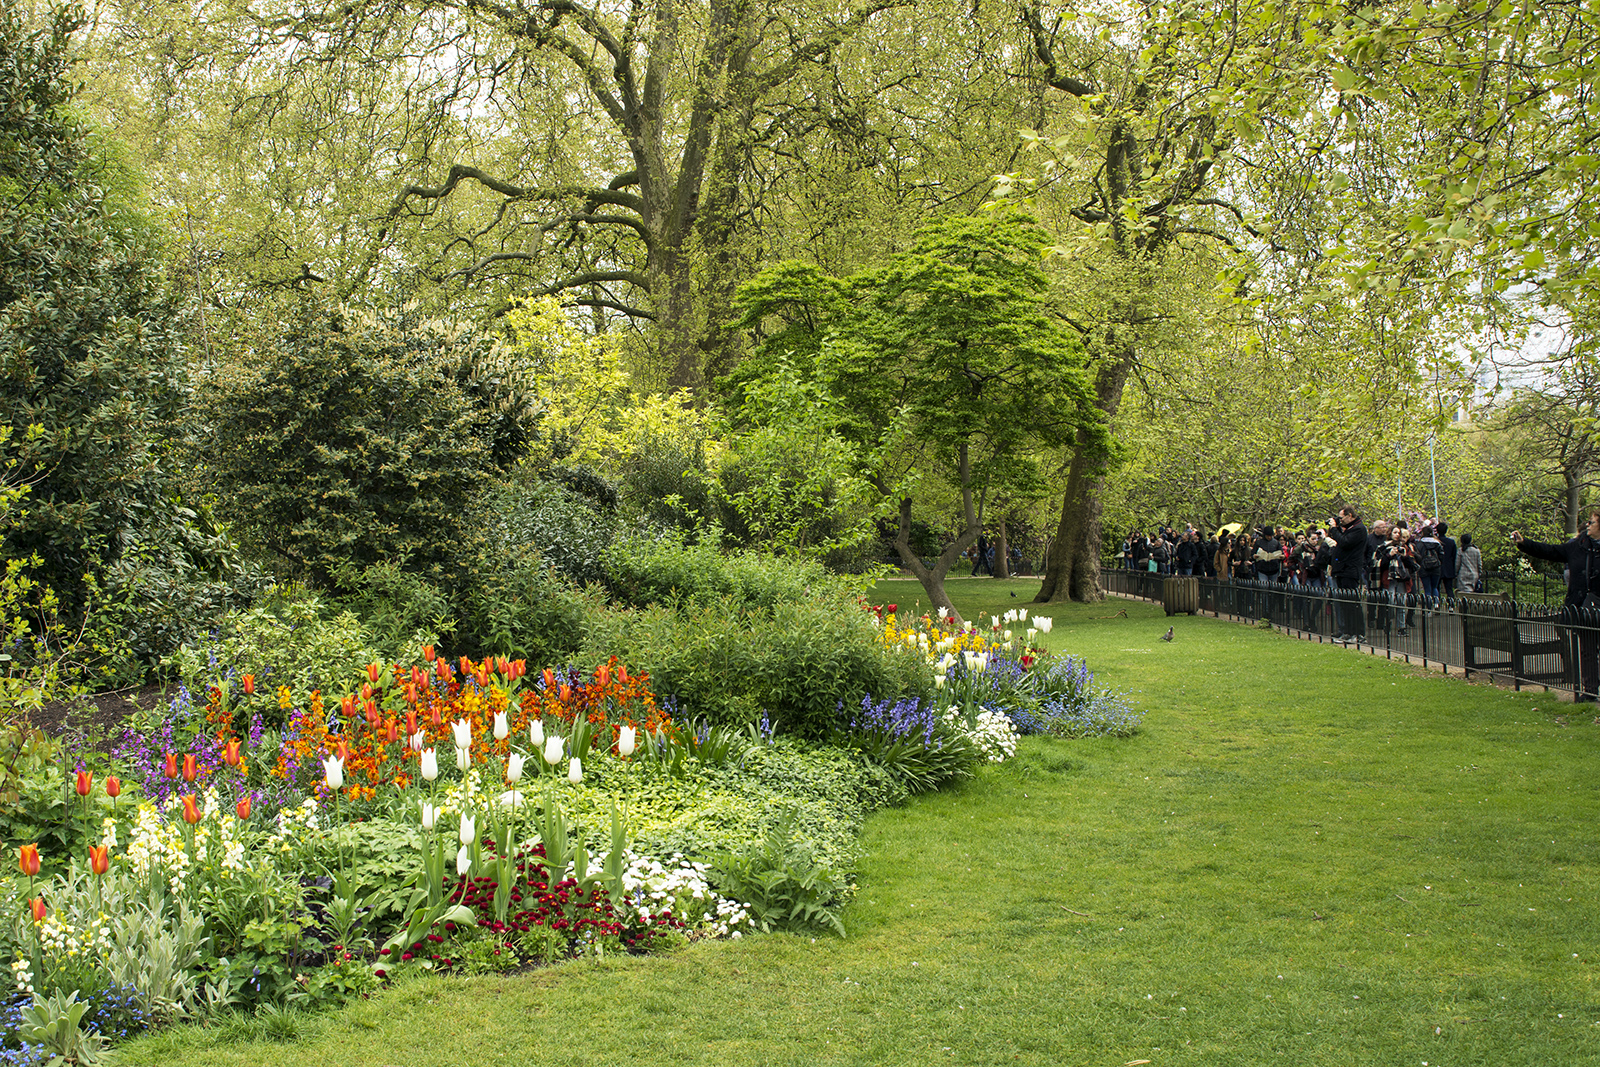 2017-04-17-Westminster_Spring_Flora_Landscape-St-Jamess-Park-Flower-Beds-2